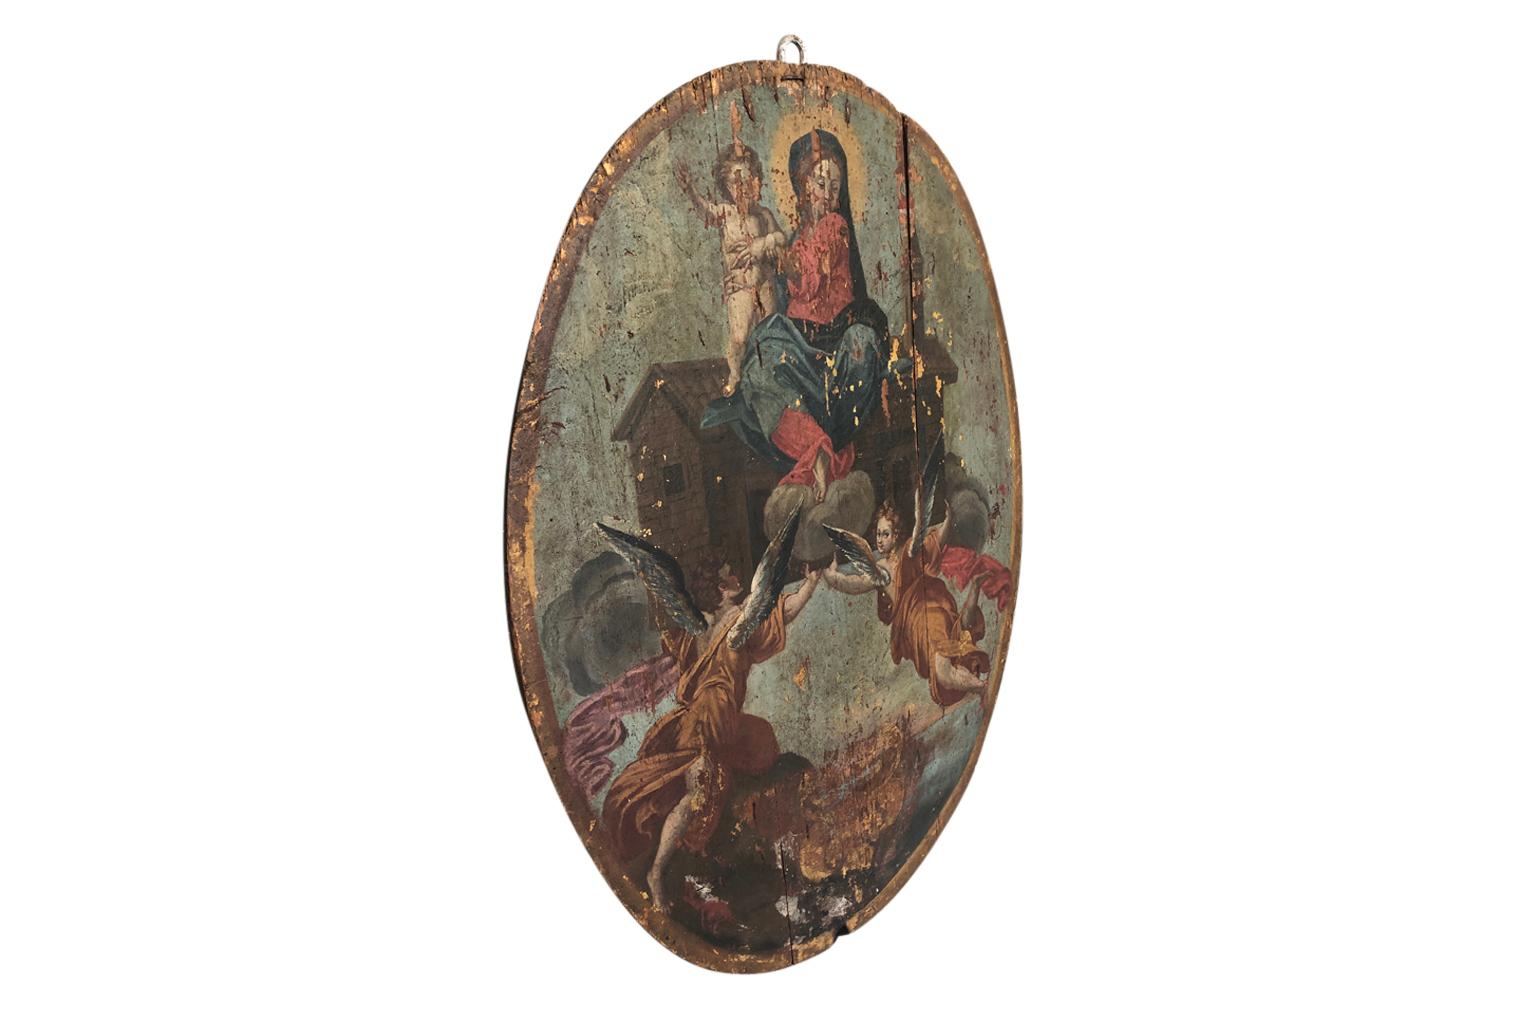 Ein herausragendes und großartiges barockes Ölgemälde aus dem 17. Jahrhundert auf einer ovalen Holztafel mit der Madonna mit Kind. Wunderschön ausgeführt und mit herrlicher Patina.